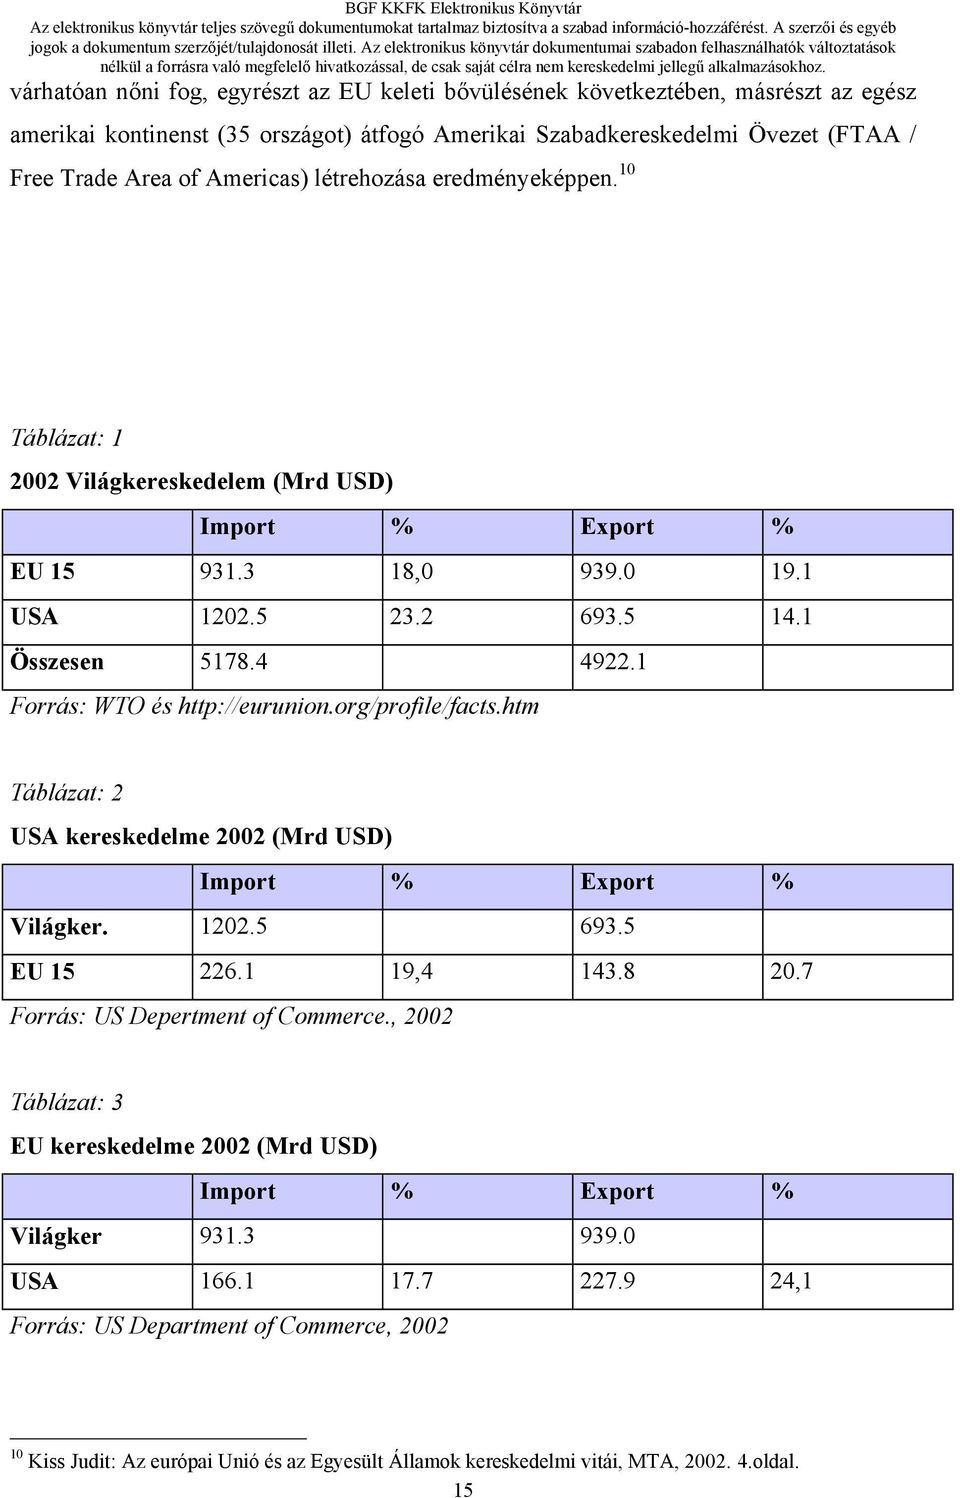 1 Forrás: WTO és http://eurunion.org/profile/facts.htm Táblázat: 2 USA kereskedelme 2002 (Mrd USD) Import % Export % Világker. 1202.5 693.5 EU 15 226.1 19,4 143.8 20.